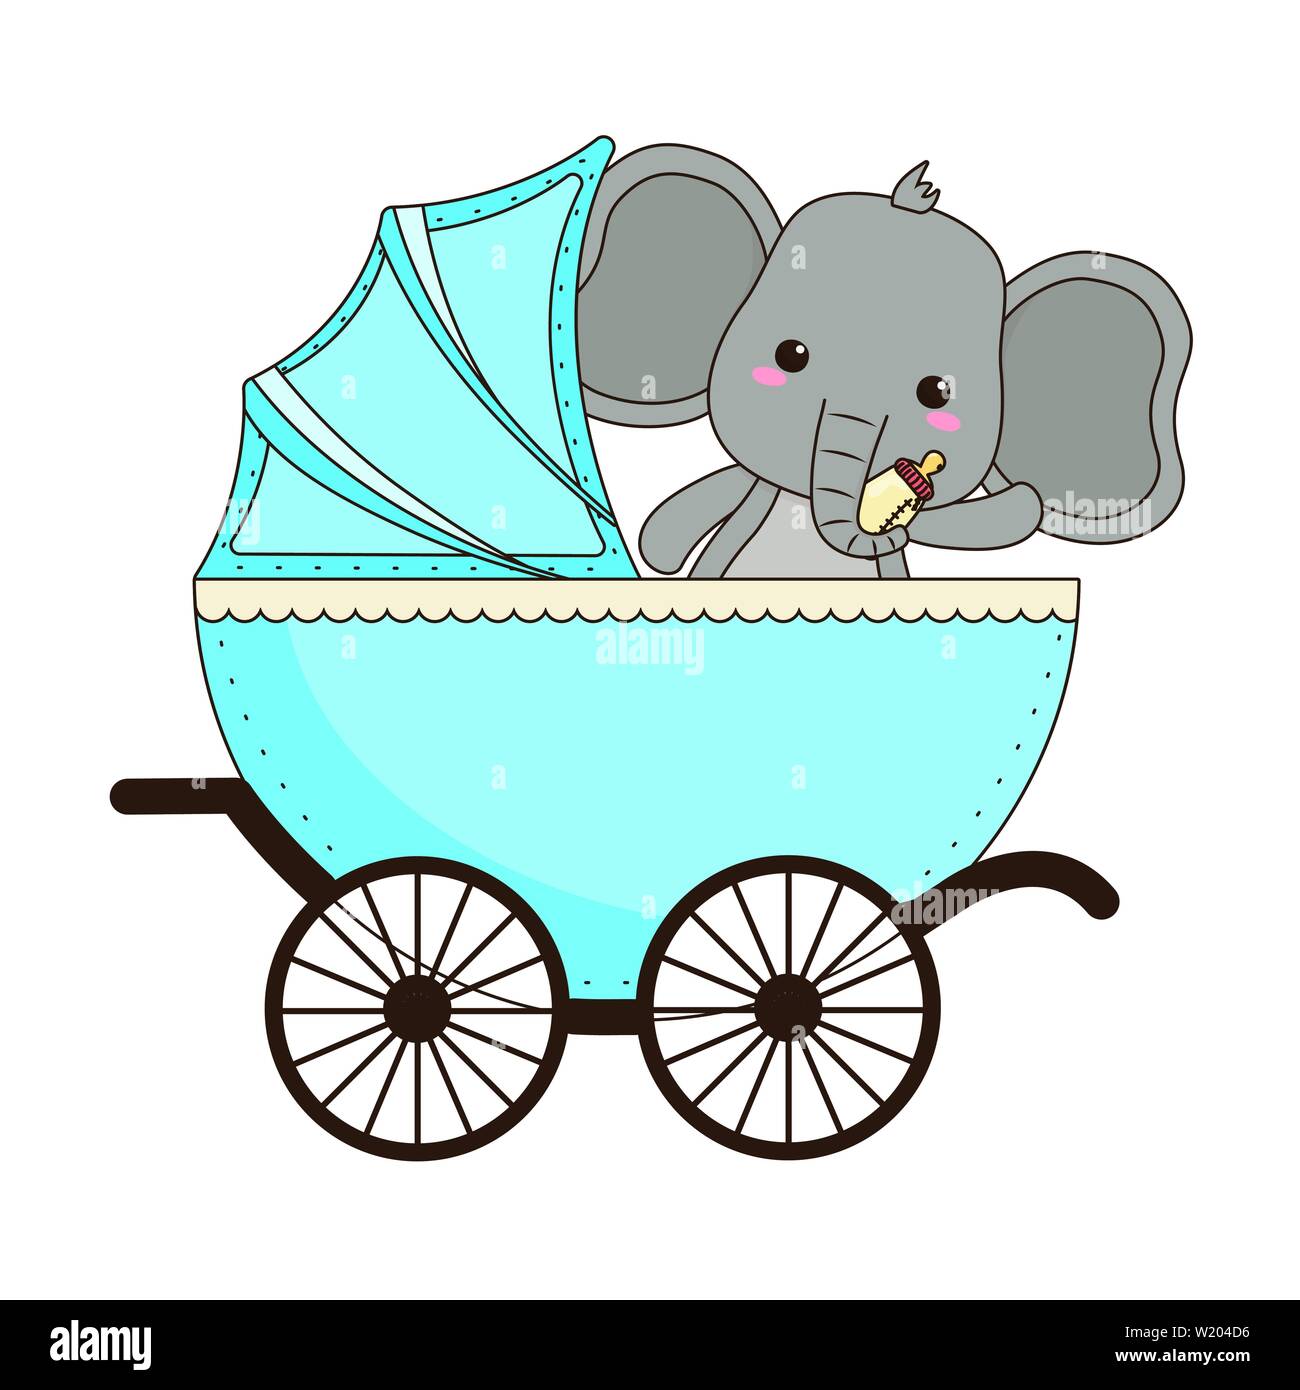 Bebé Elefante De Dibujos Animados Diseño De Tarjeta De Invitación De